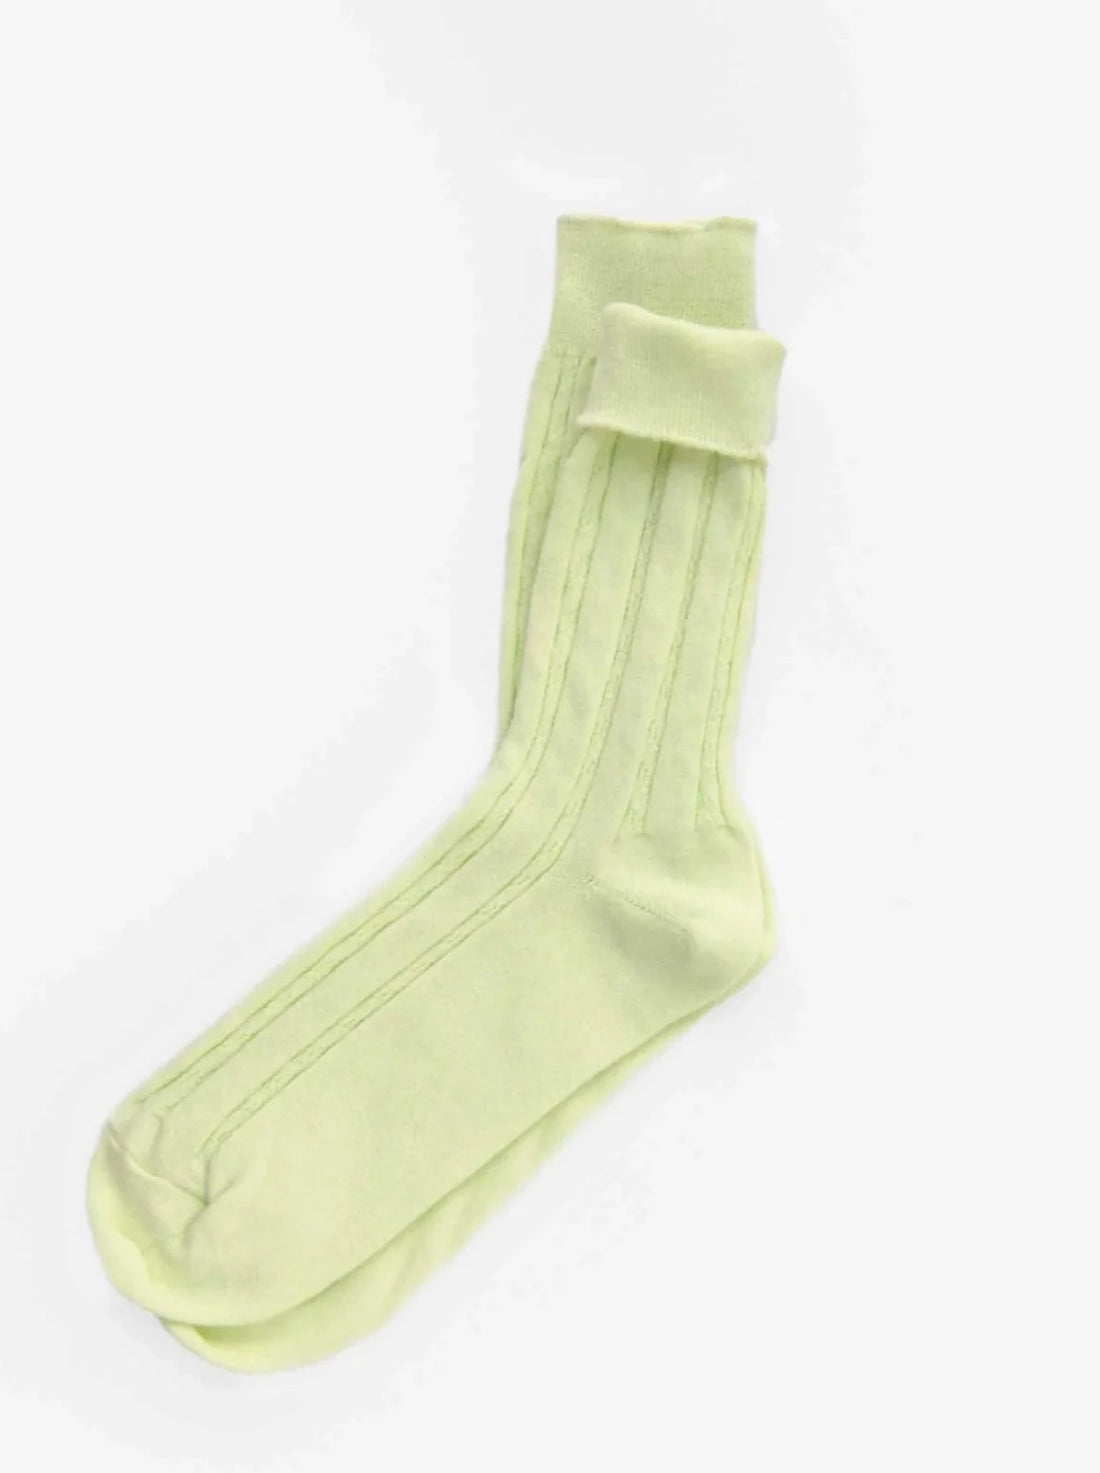 Stock up on Socks SALE!!! Smartwool Socks Buy 1 Get 1 Thurs